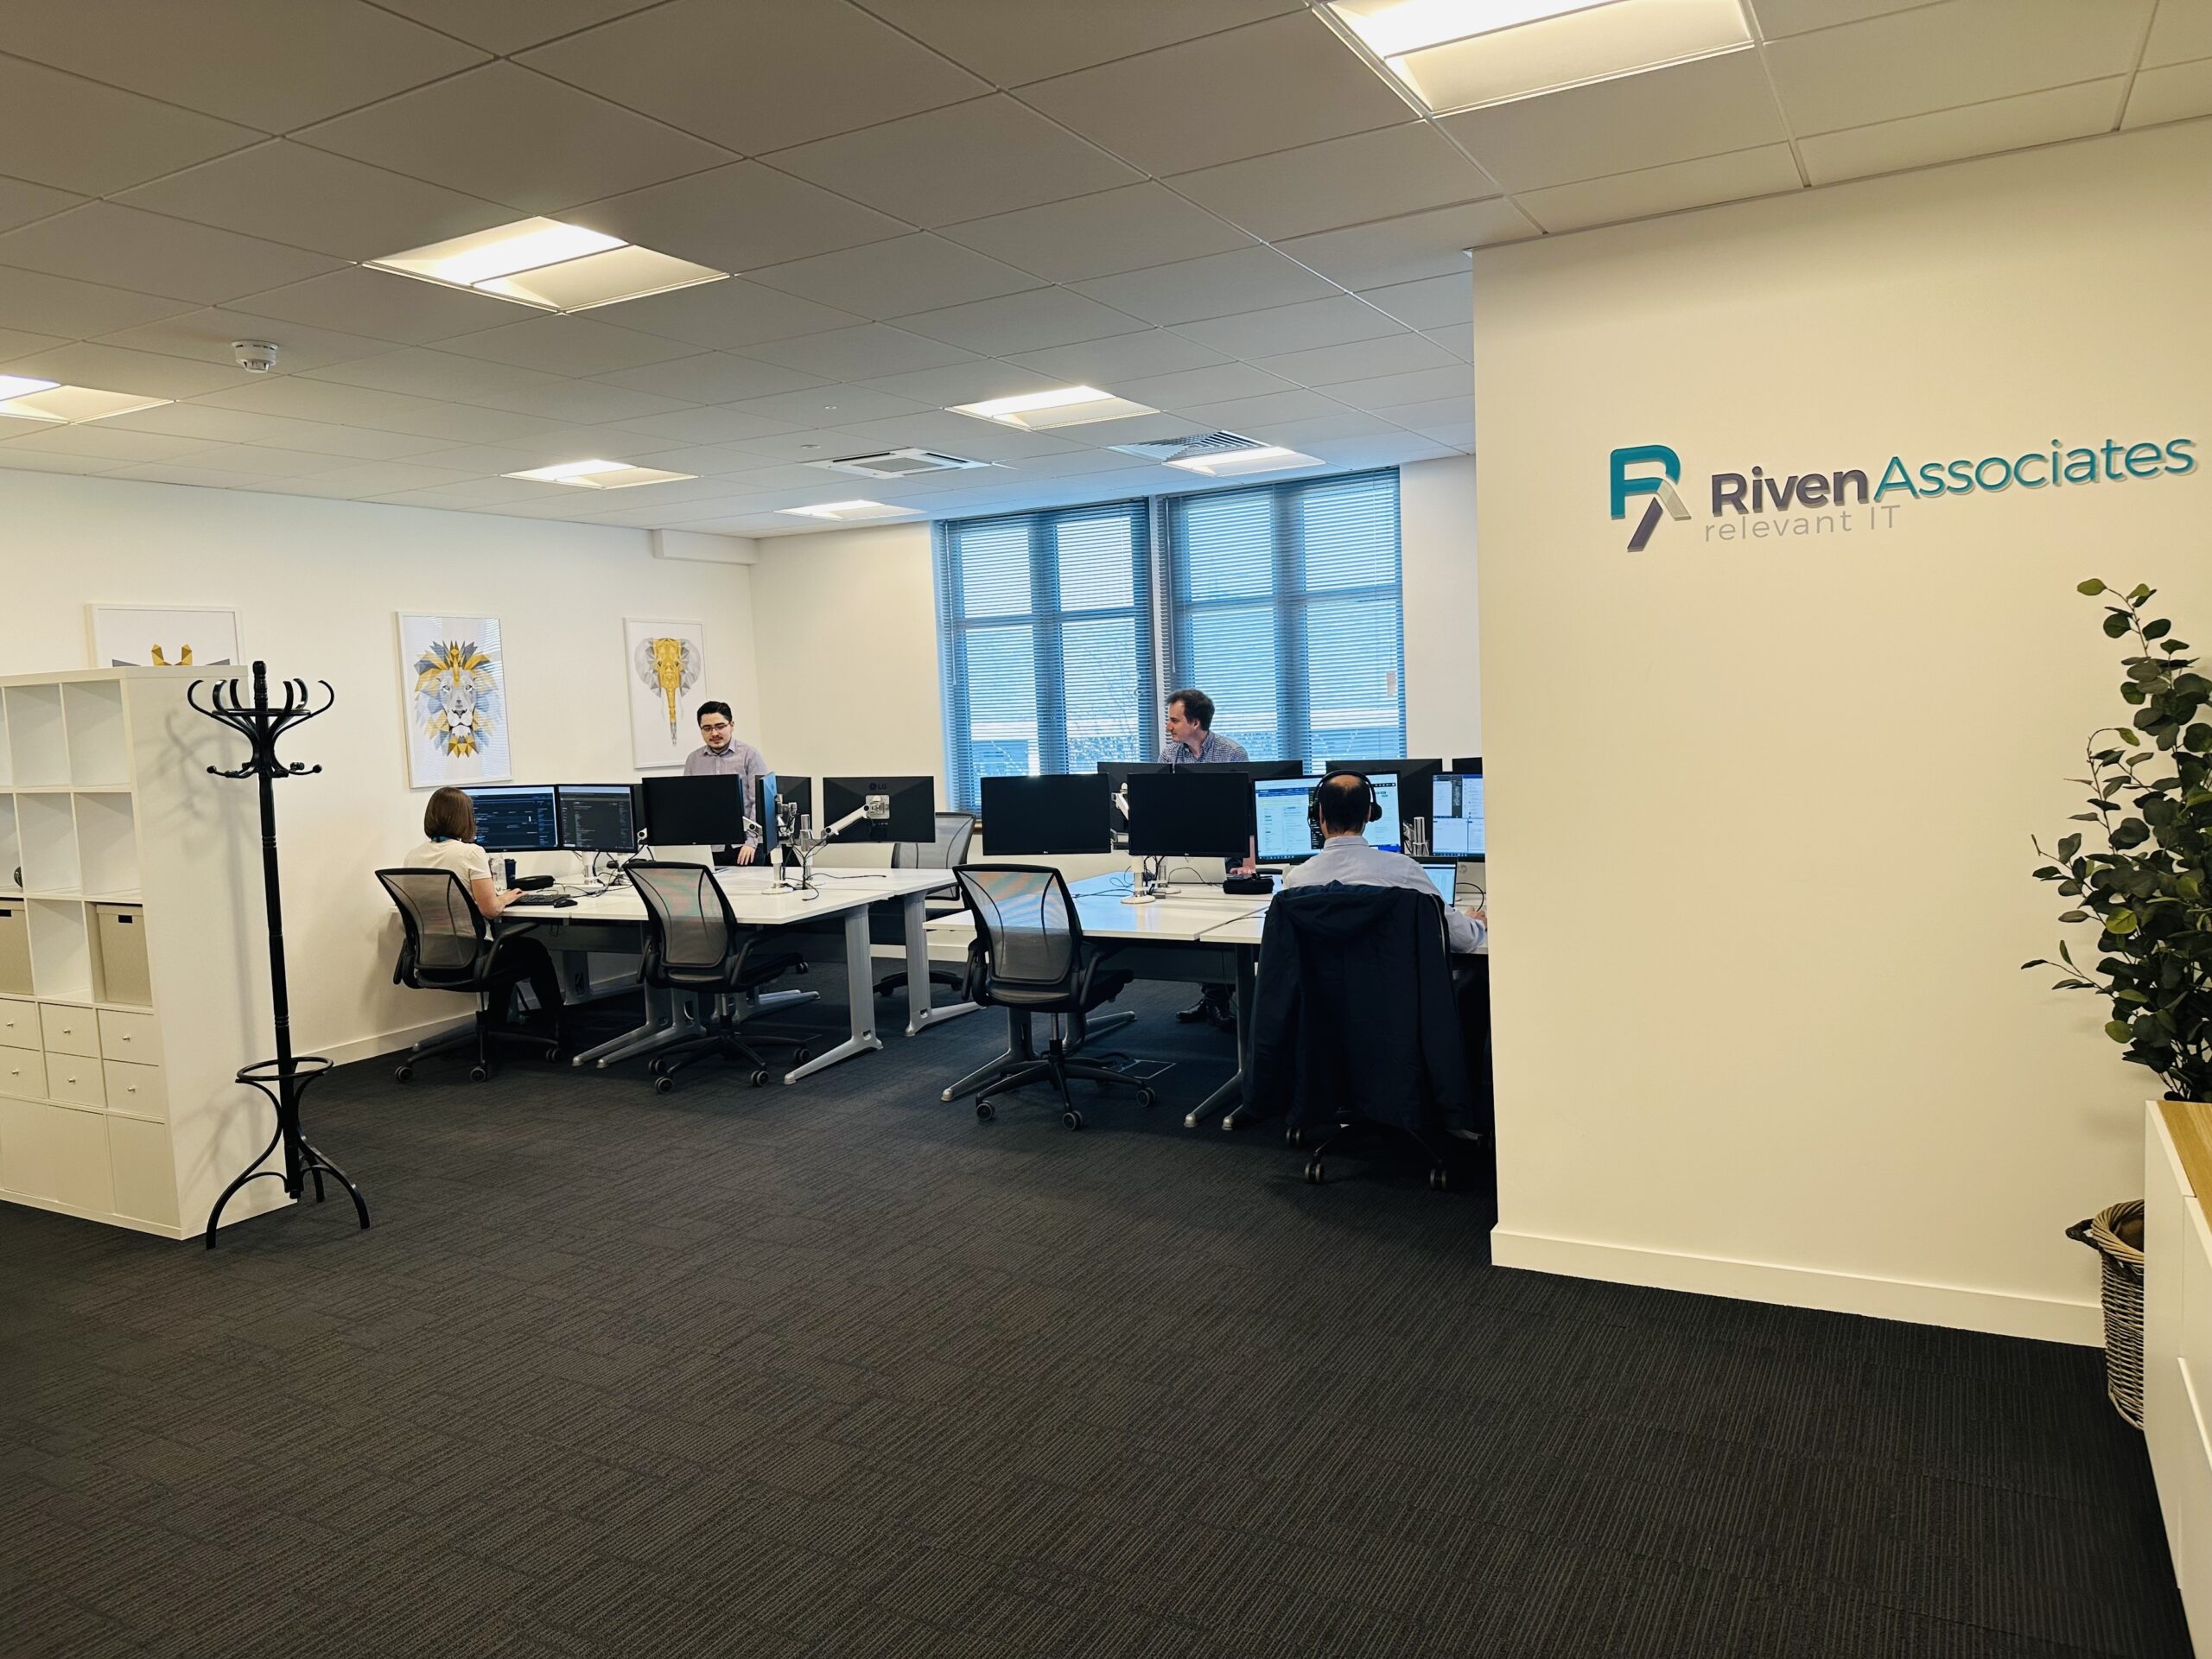 A Client Spotlight on Riven Associates